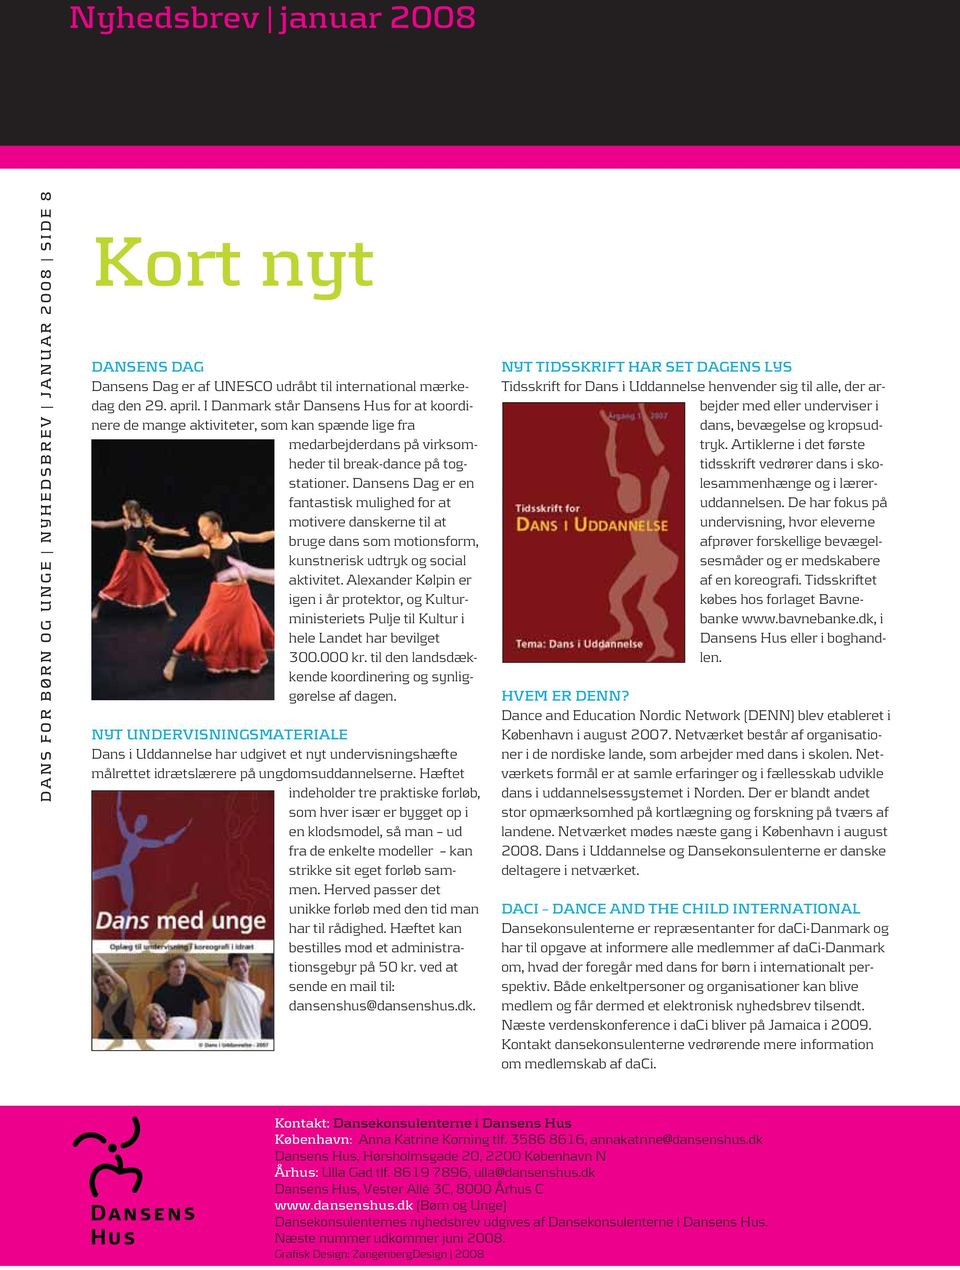 Dansens Dag er en fantastisk mulighed for at motivere danskerne til at bruge dans som motionsform, kunstnerisk udtryk og social aktivitet.